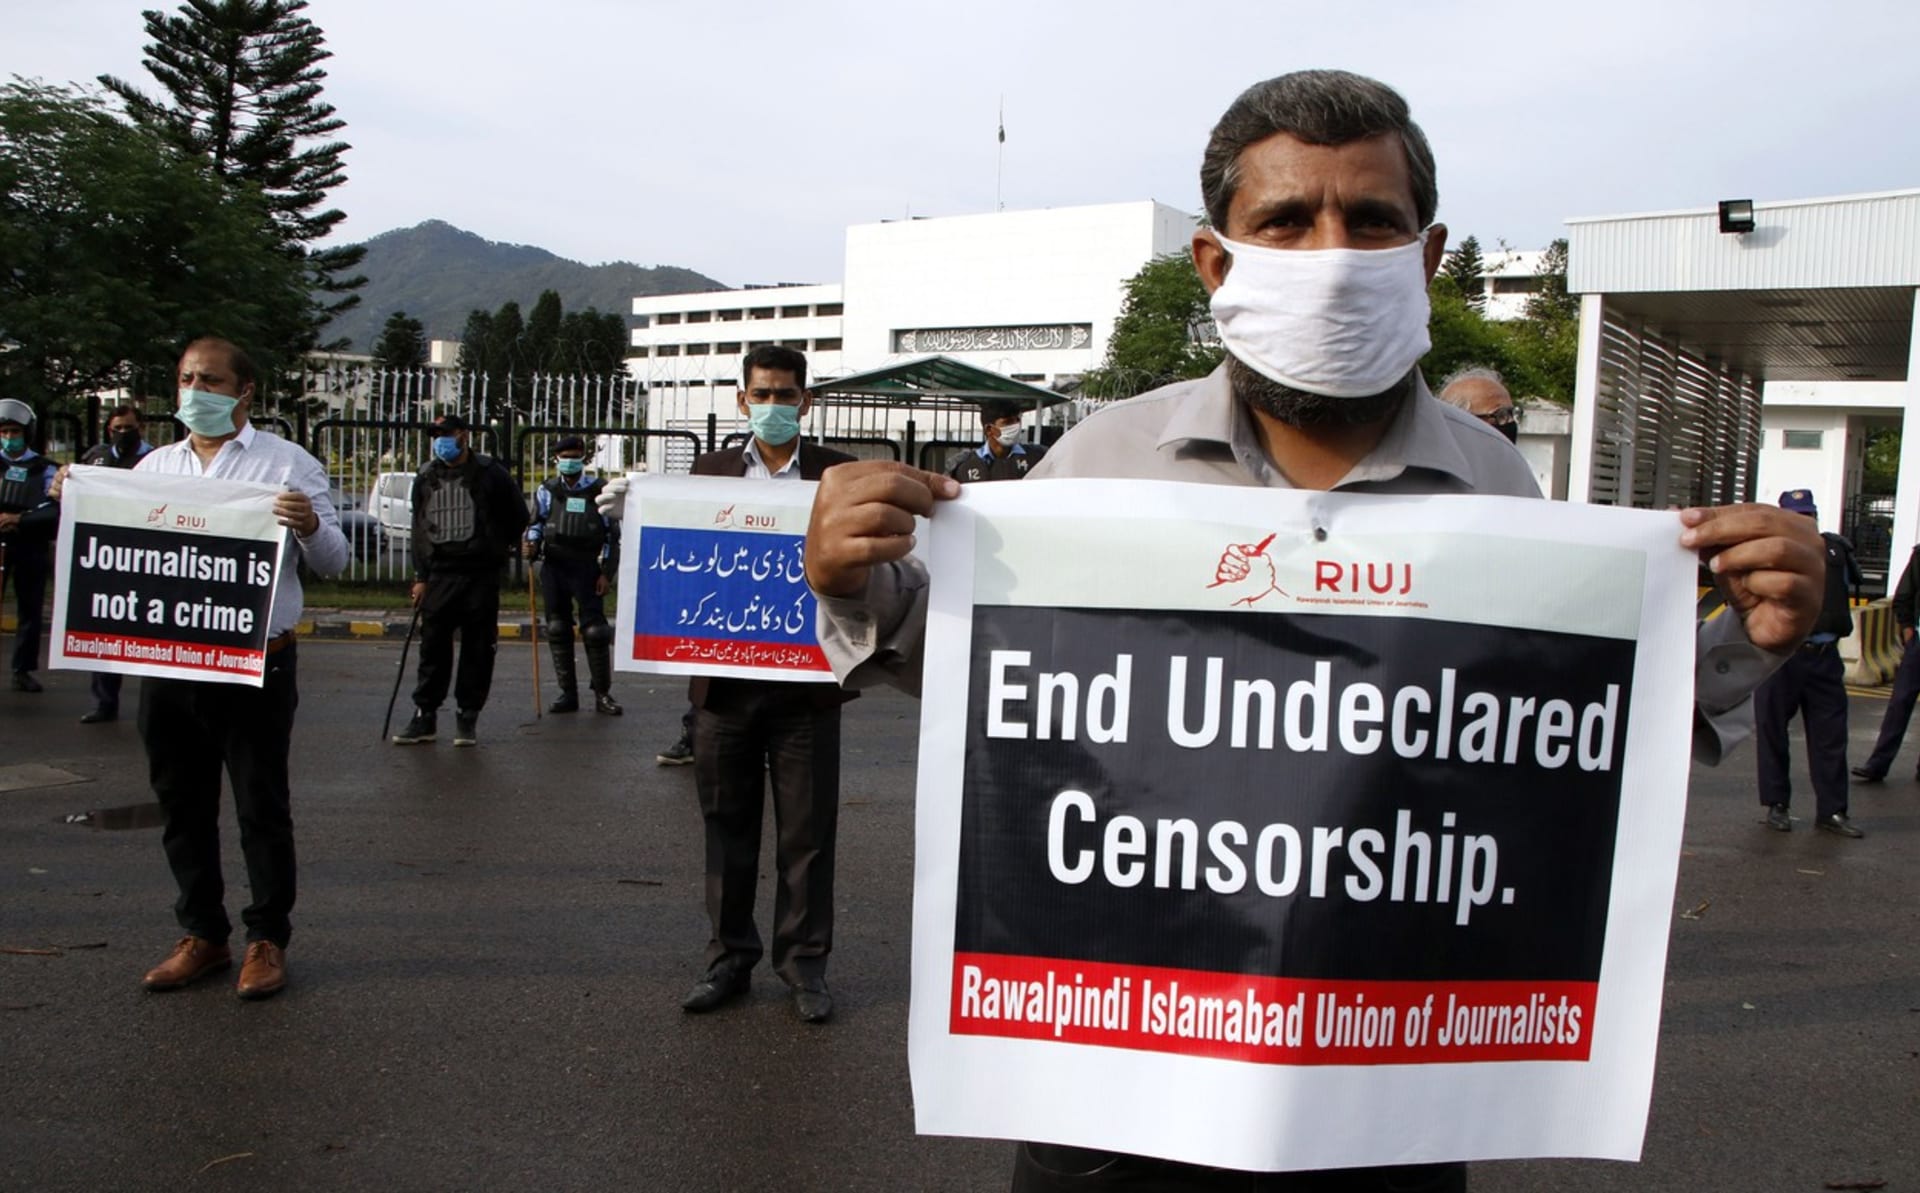 Proti nezávislým novinářům brojí mimo jiné režim v Pákistánu.